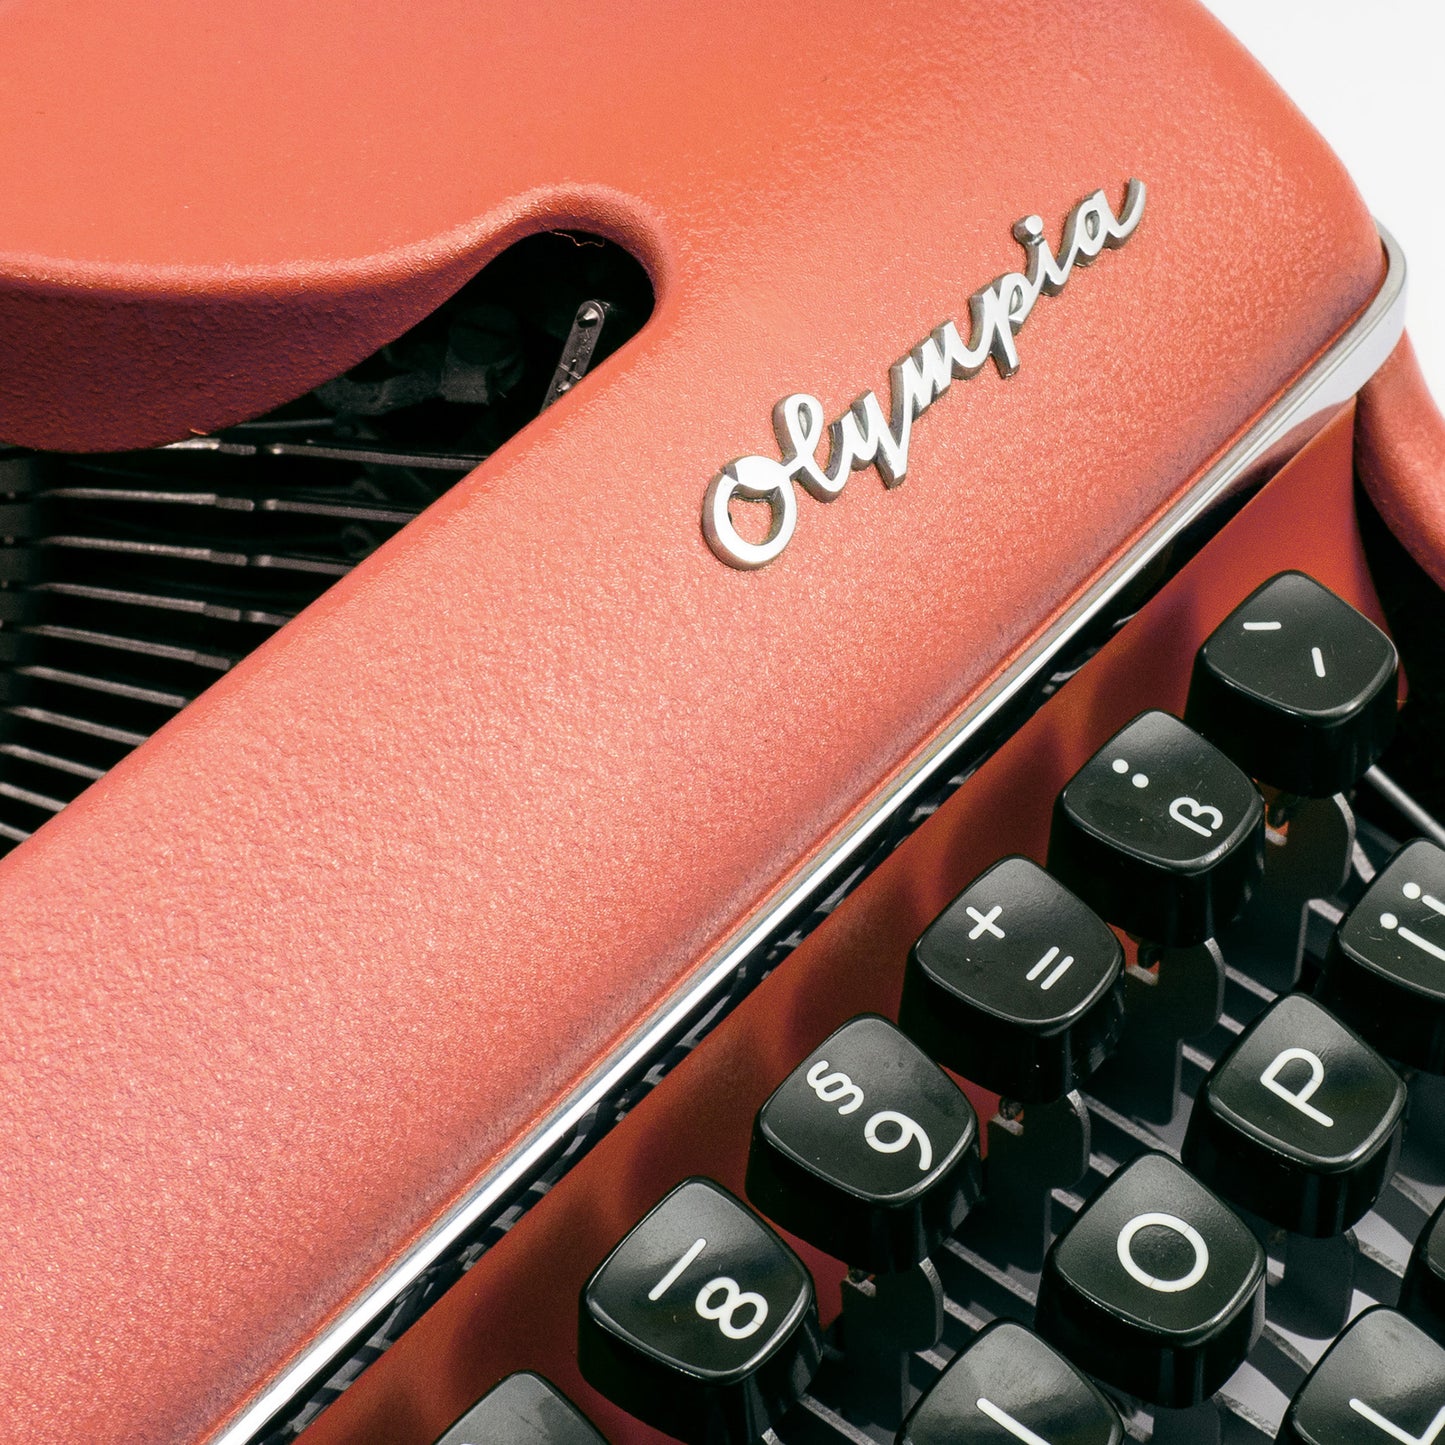 Retro Schreibmaschine Apricot